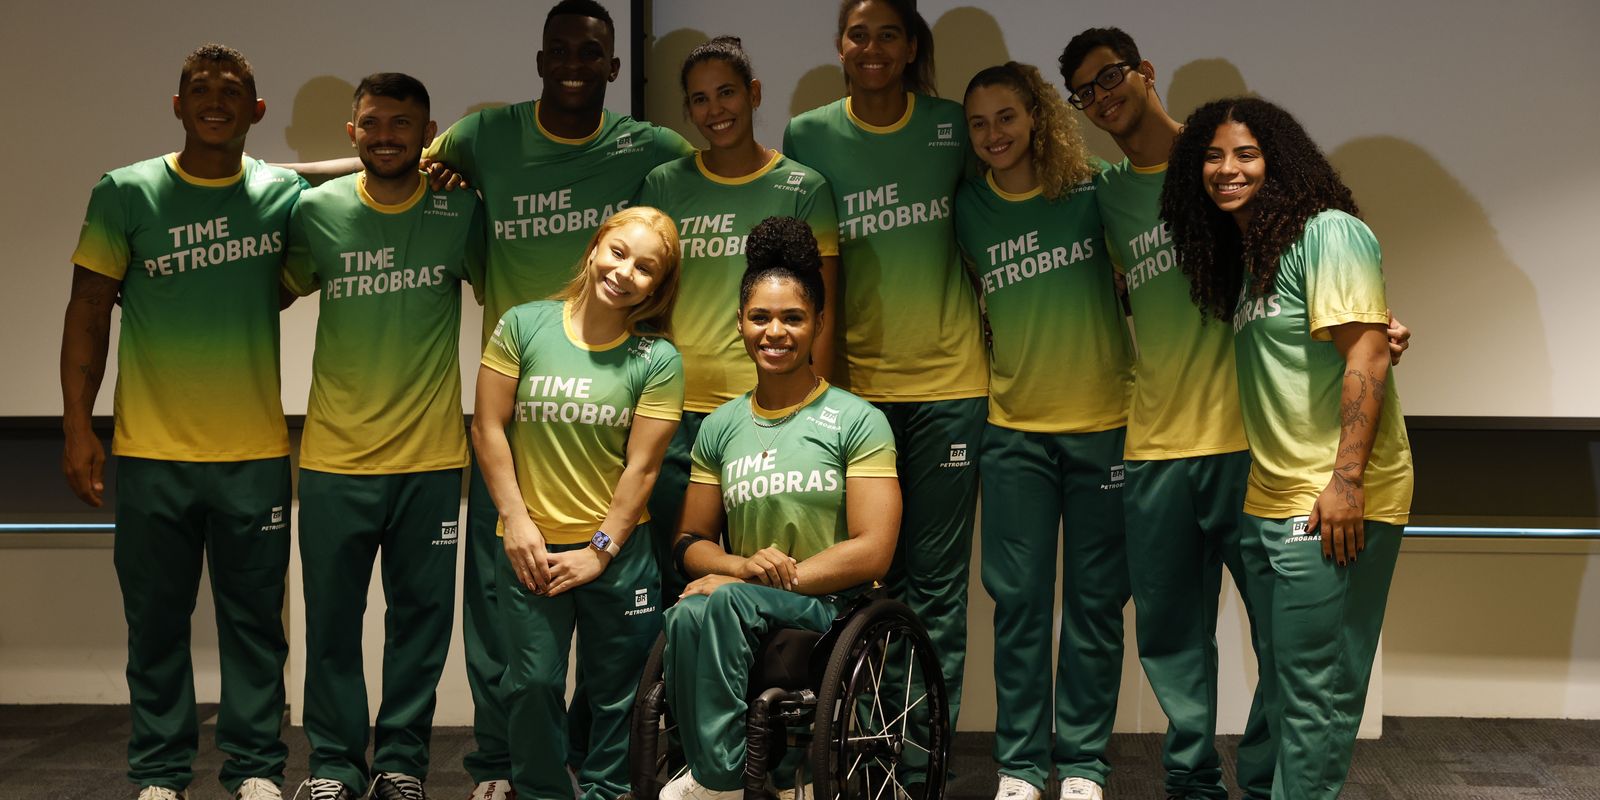 Paris 2024: atletas brasileiros reforçam cuidados com saúde mental